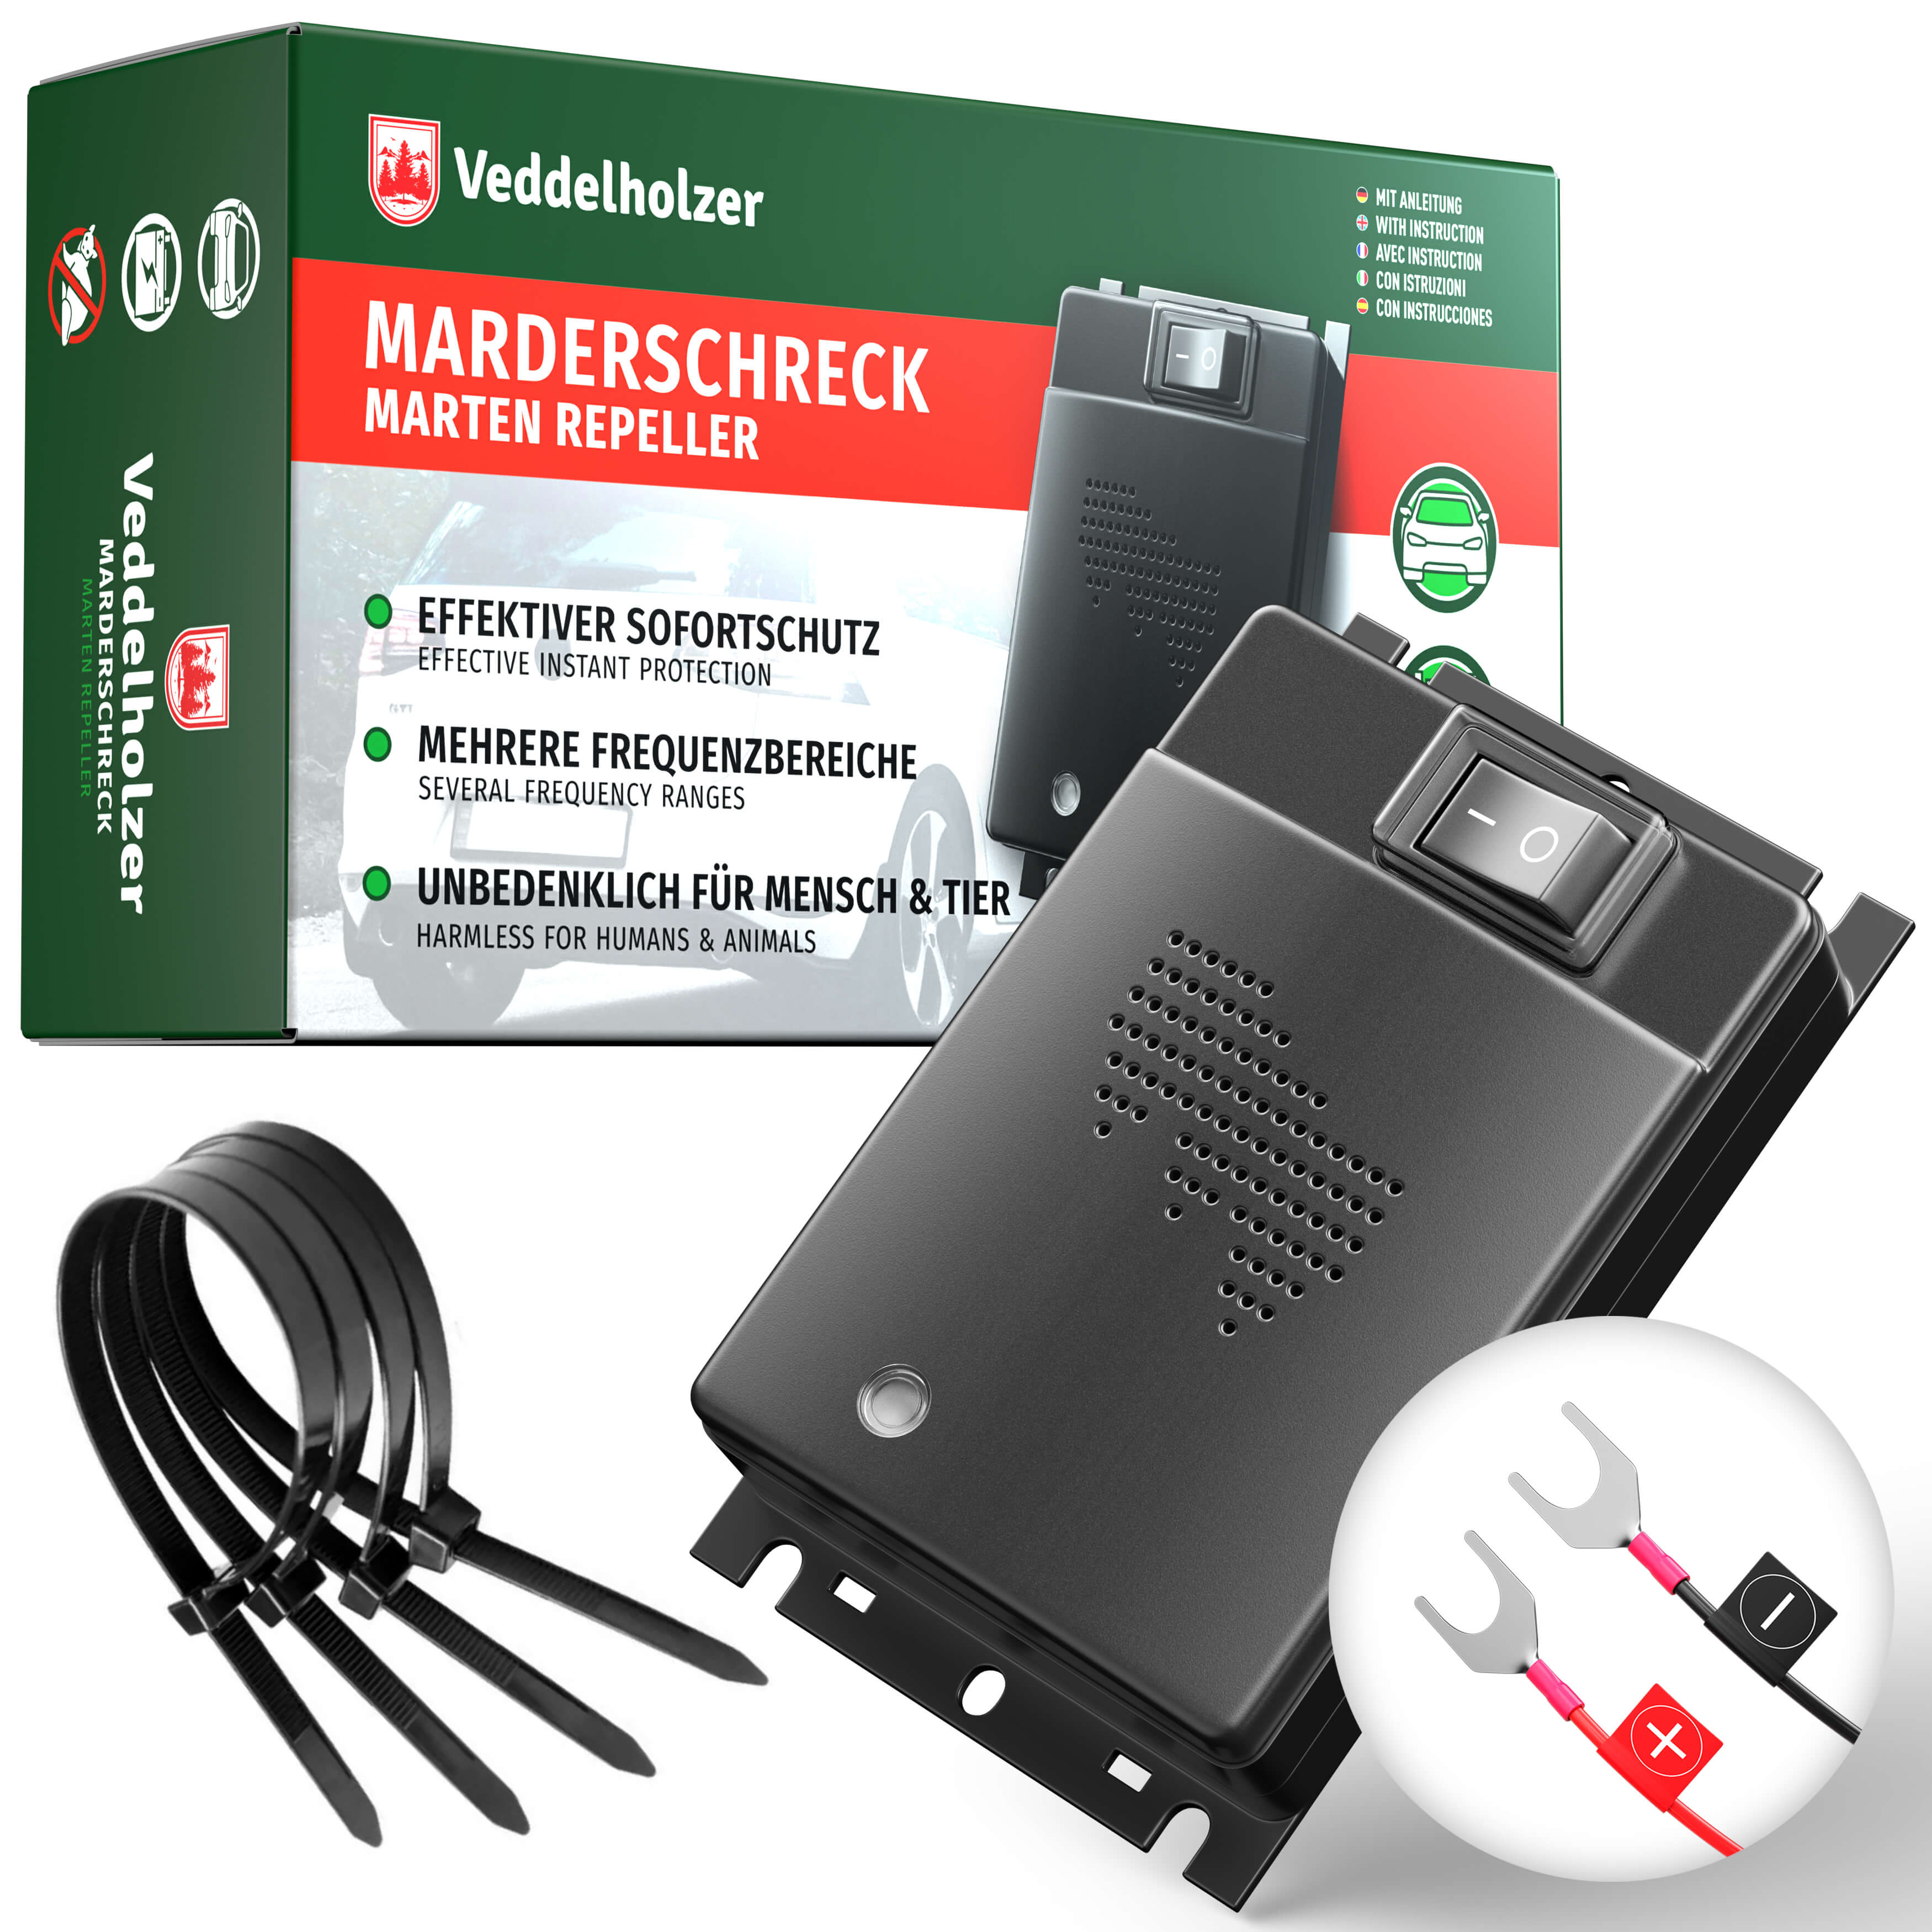 PATTLER Marderschreck Auto Anschluss an 12V Autobatterie - ERASIO